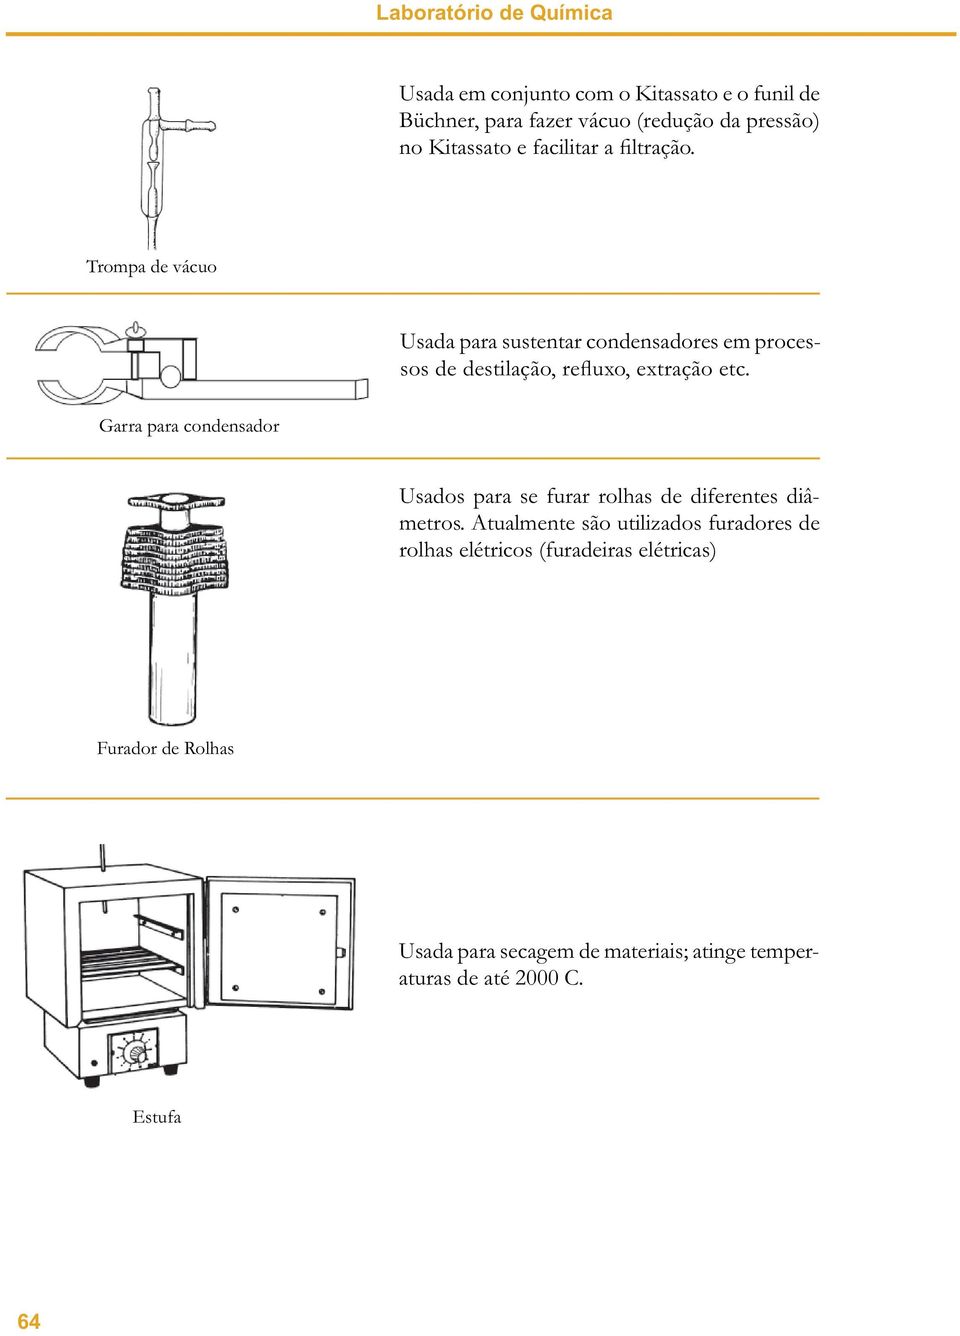 Trompa de vácuo Usada para sustentar condensadores em processos de destilação, refluxo, extração etc.